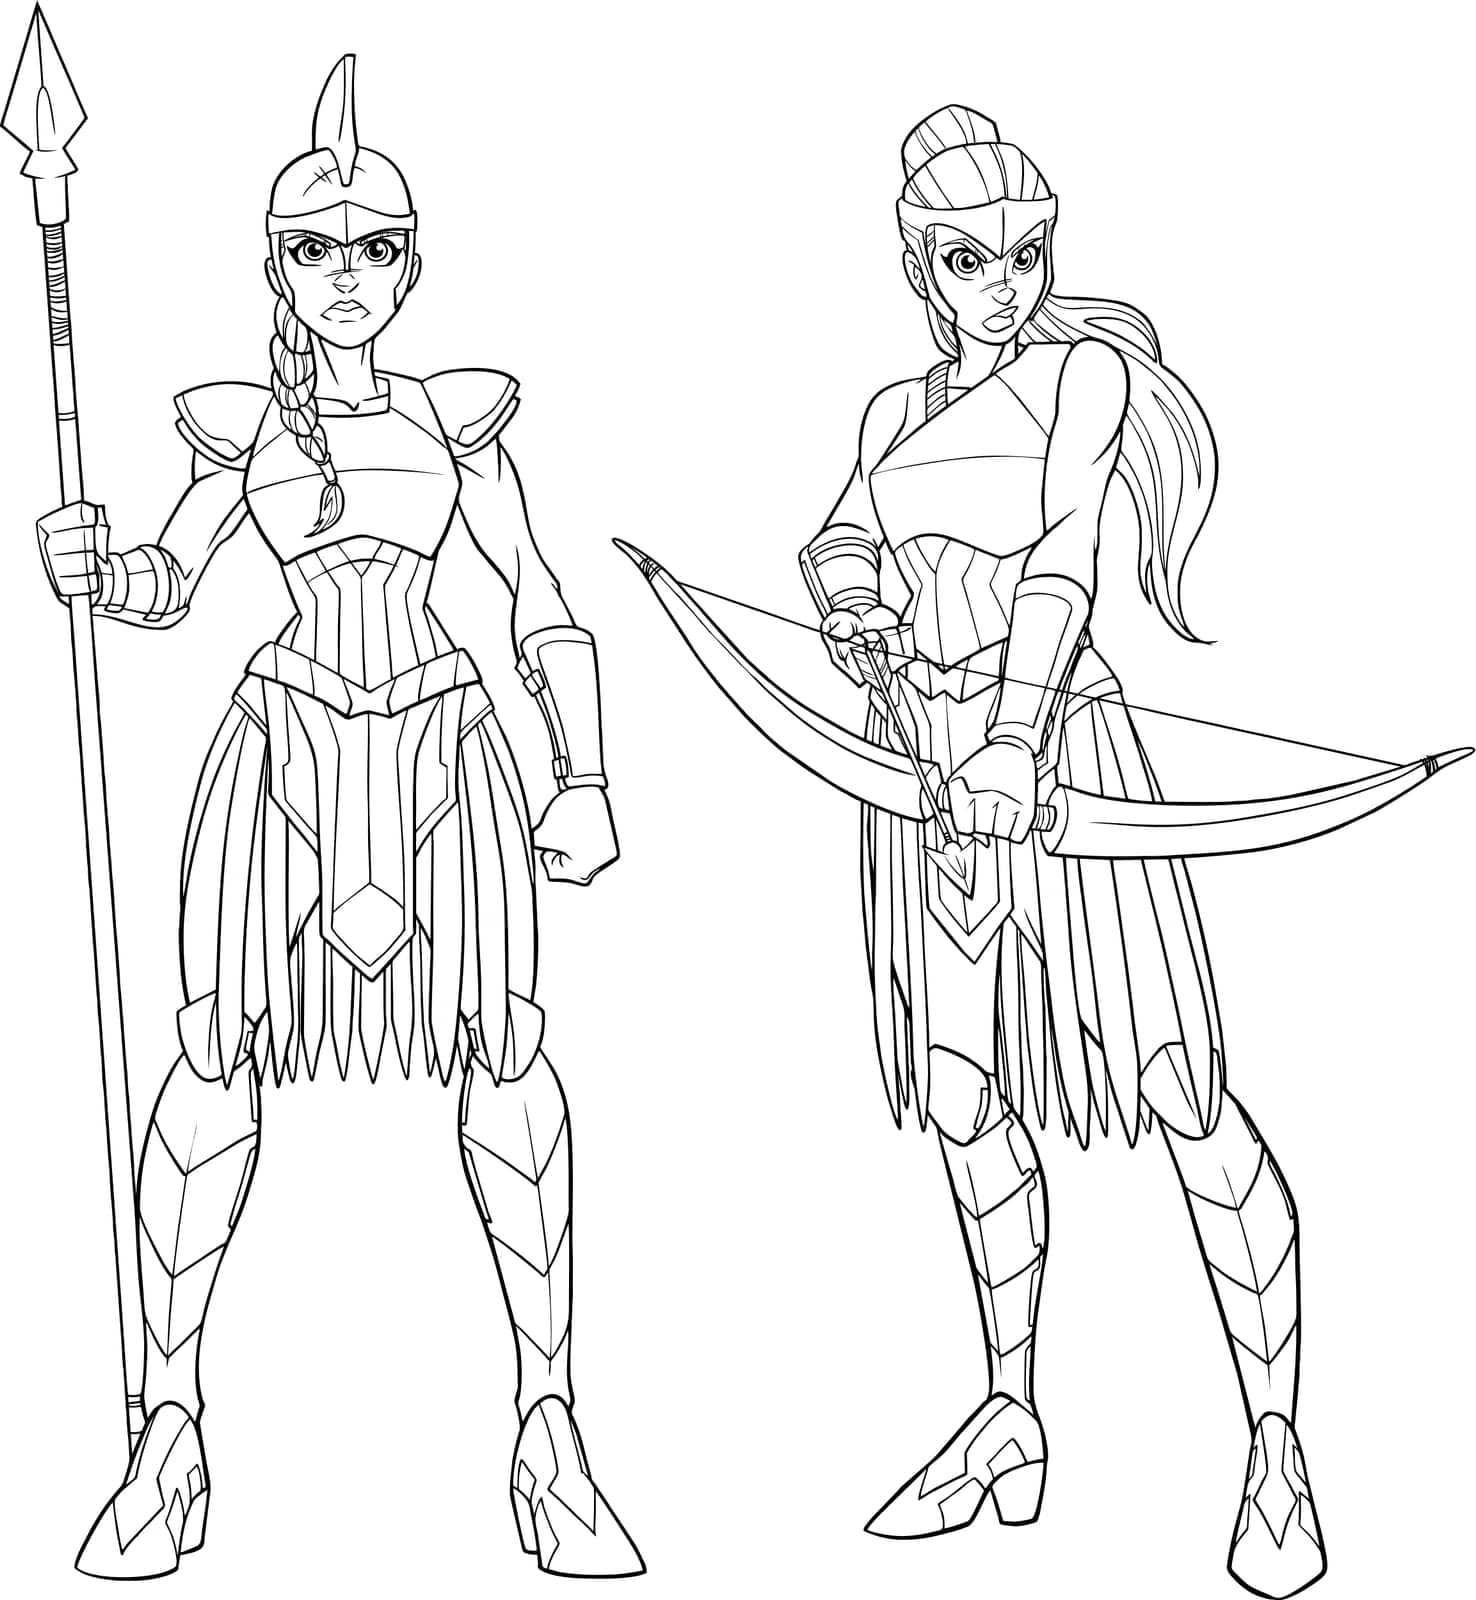 Line art illustration of 2 fierce Amazon warriors in full battle gear.